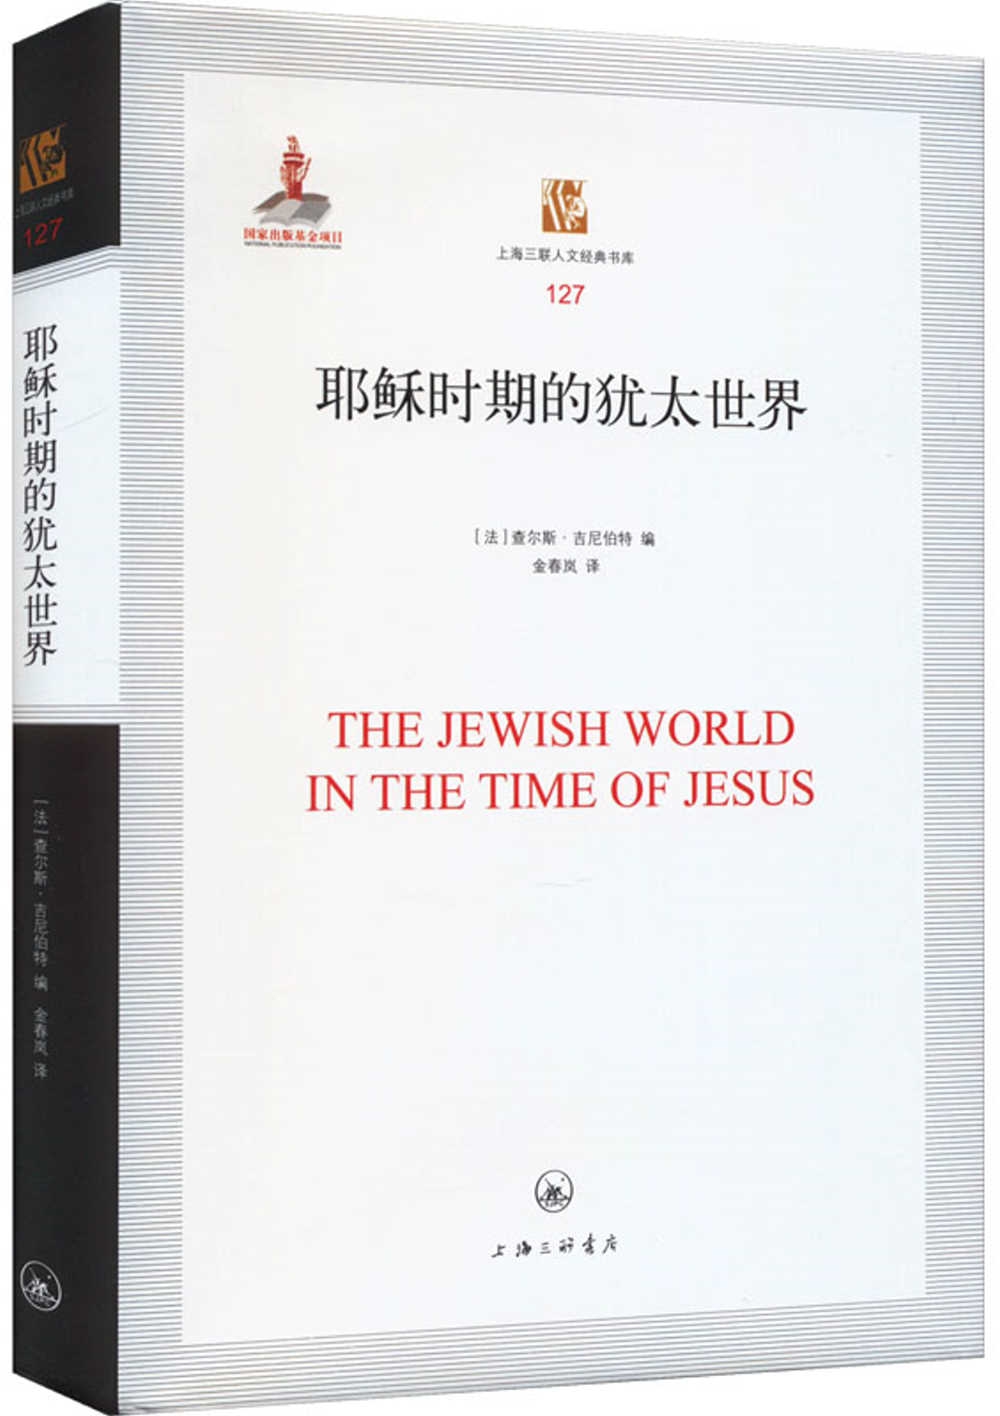 耶穌時期的猶太世界